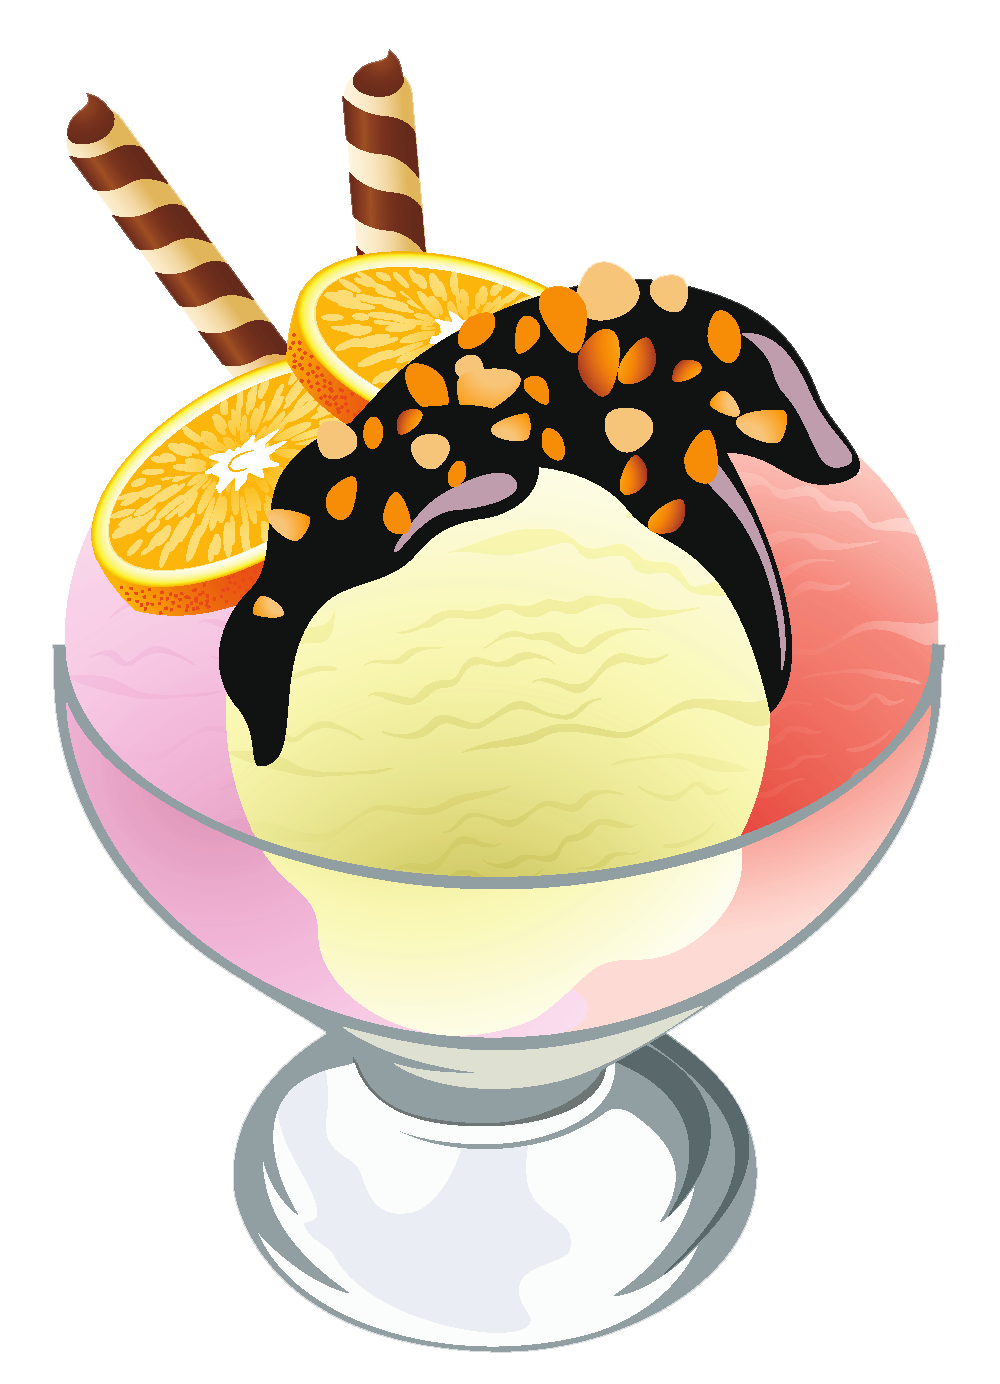 ice cream sundae images clip art - photo #27